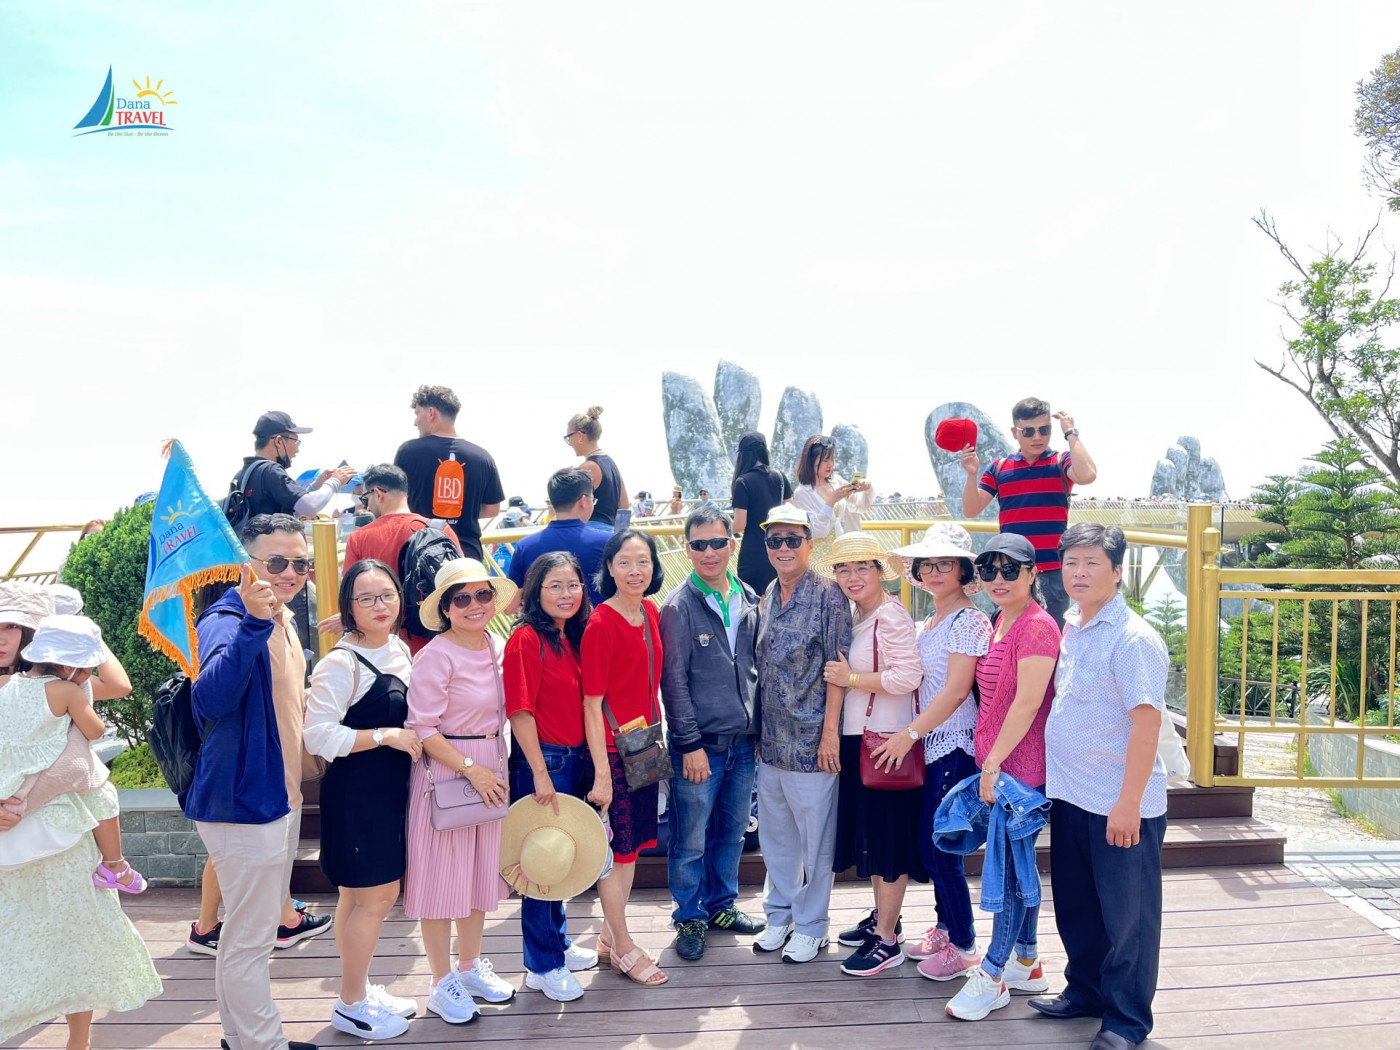 Tổng hợp các tour du lịch hè Đà Nẵng 2022